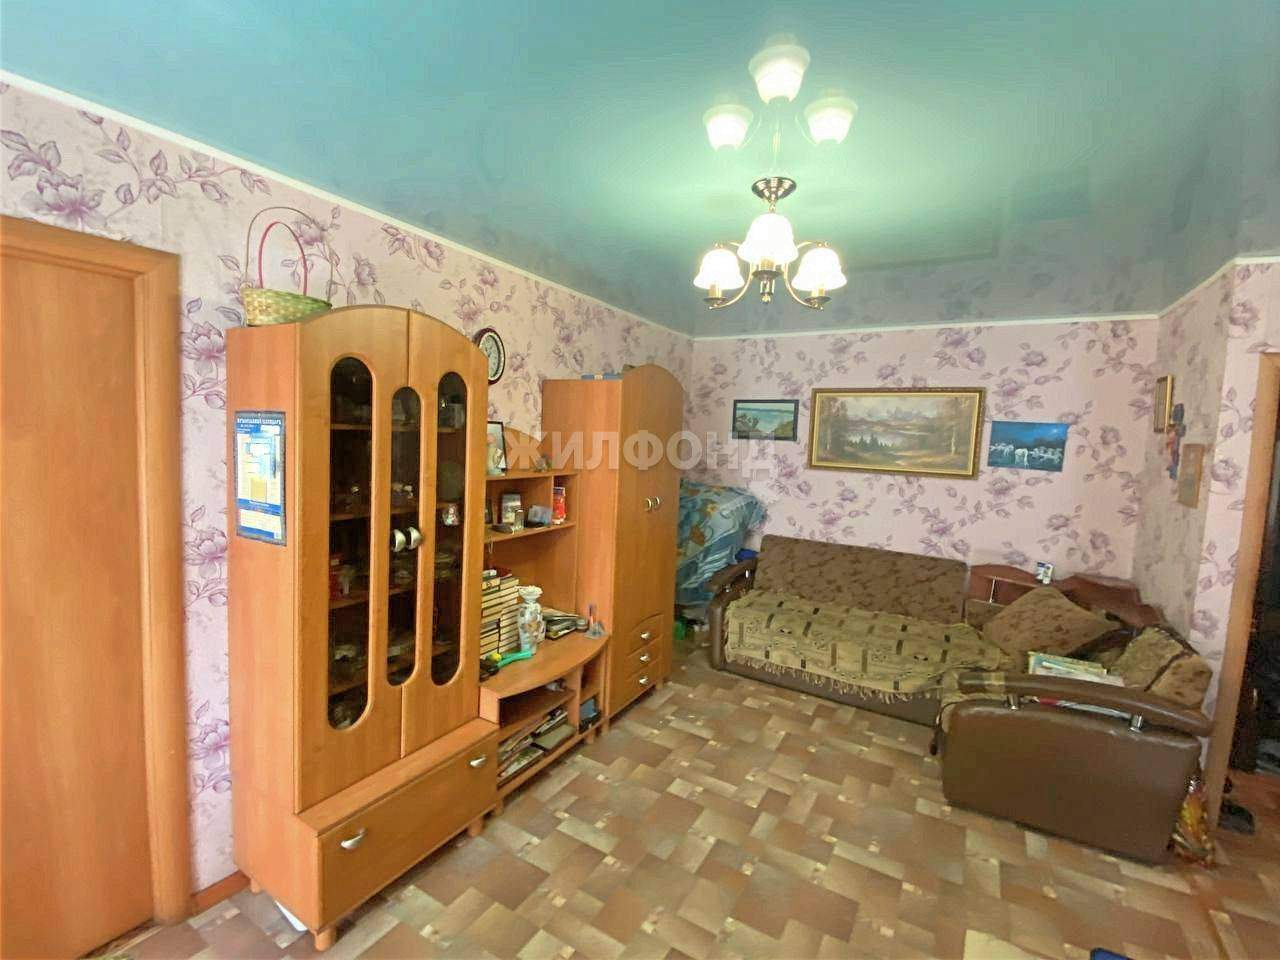 Снять квартиру в прокопьевске на длительный срок без посредников с мебелью недорого на тыргане